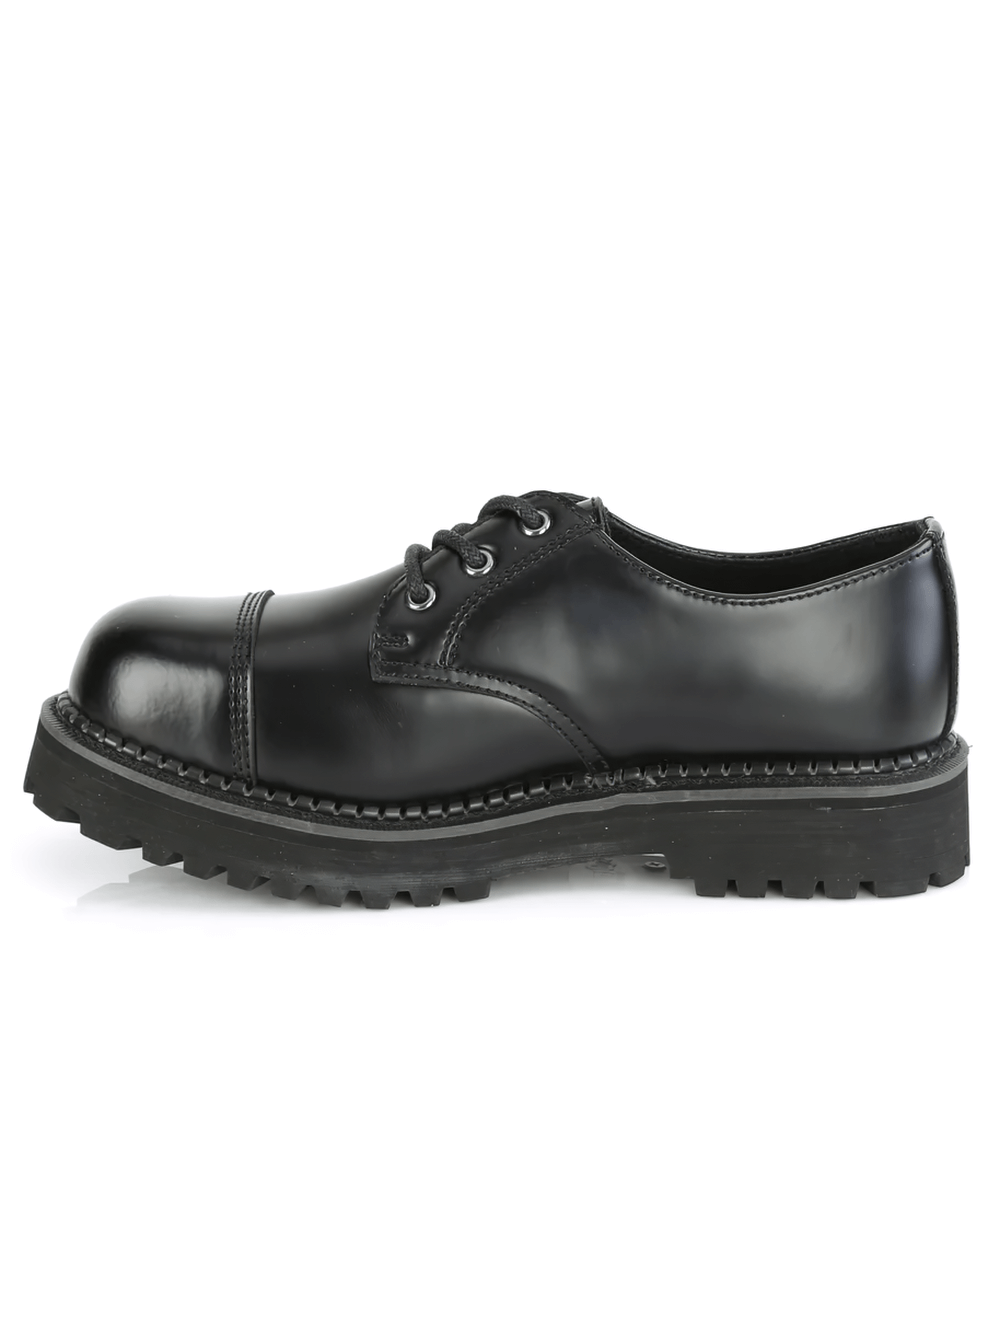 DEMONIA Black Leather Lace-Up Unisex Aesthetics Shoes